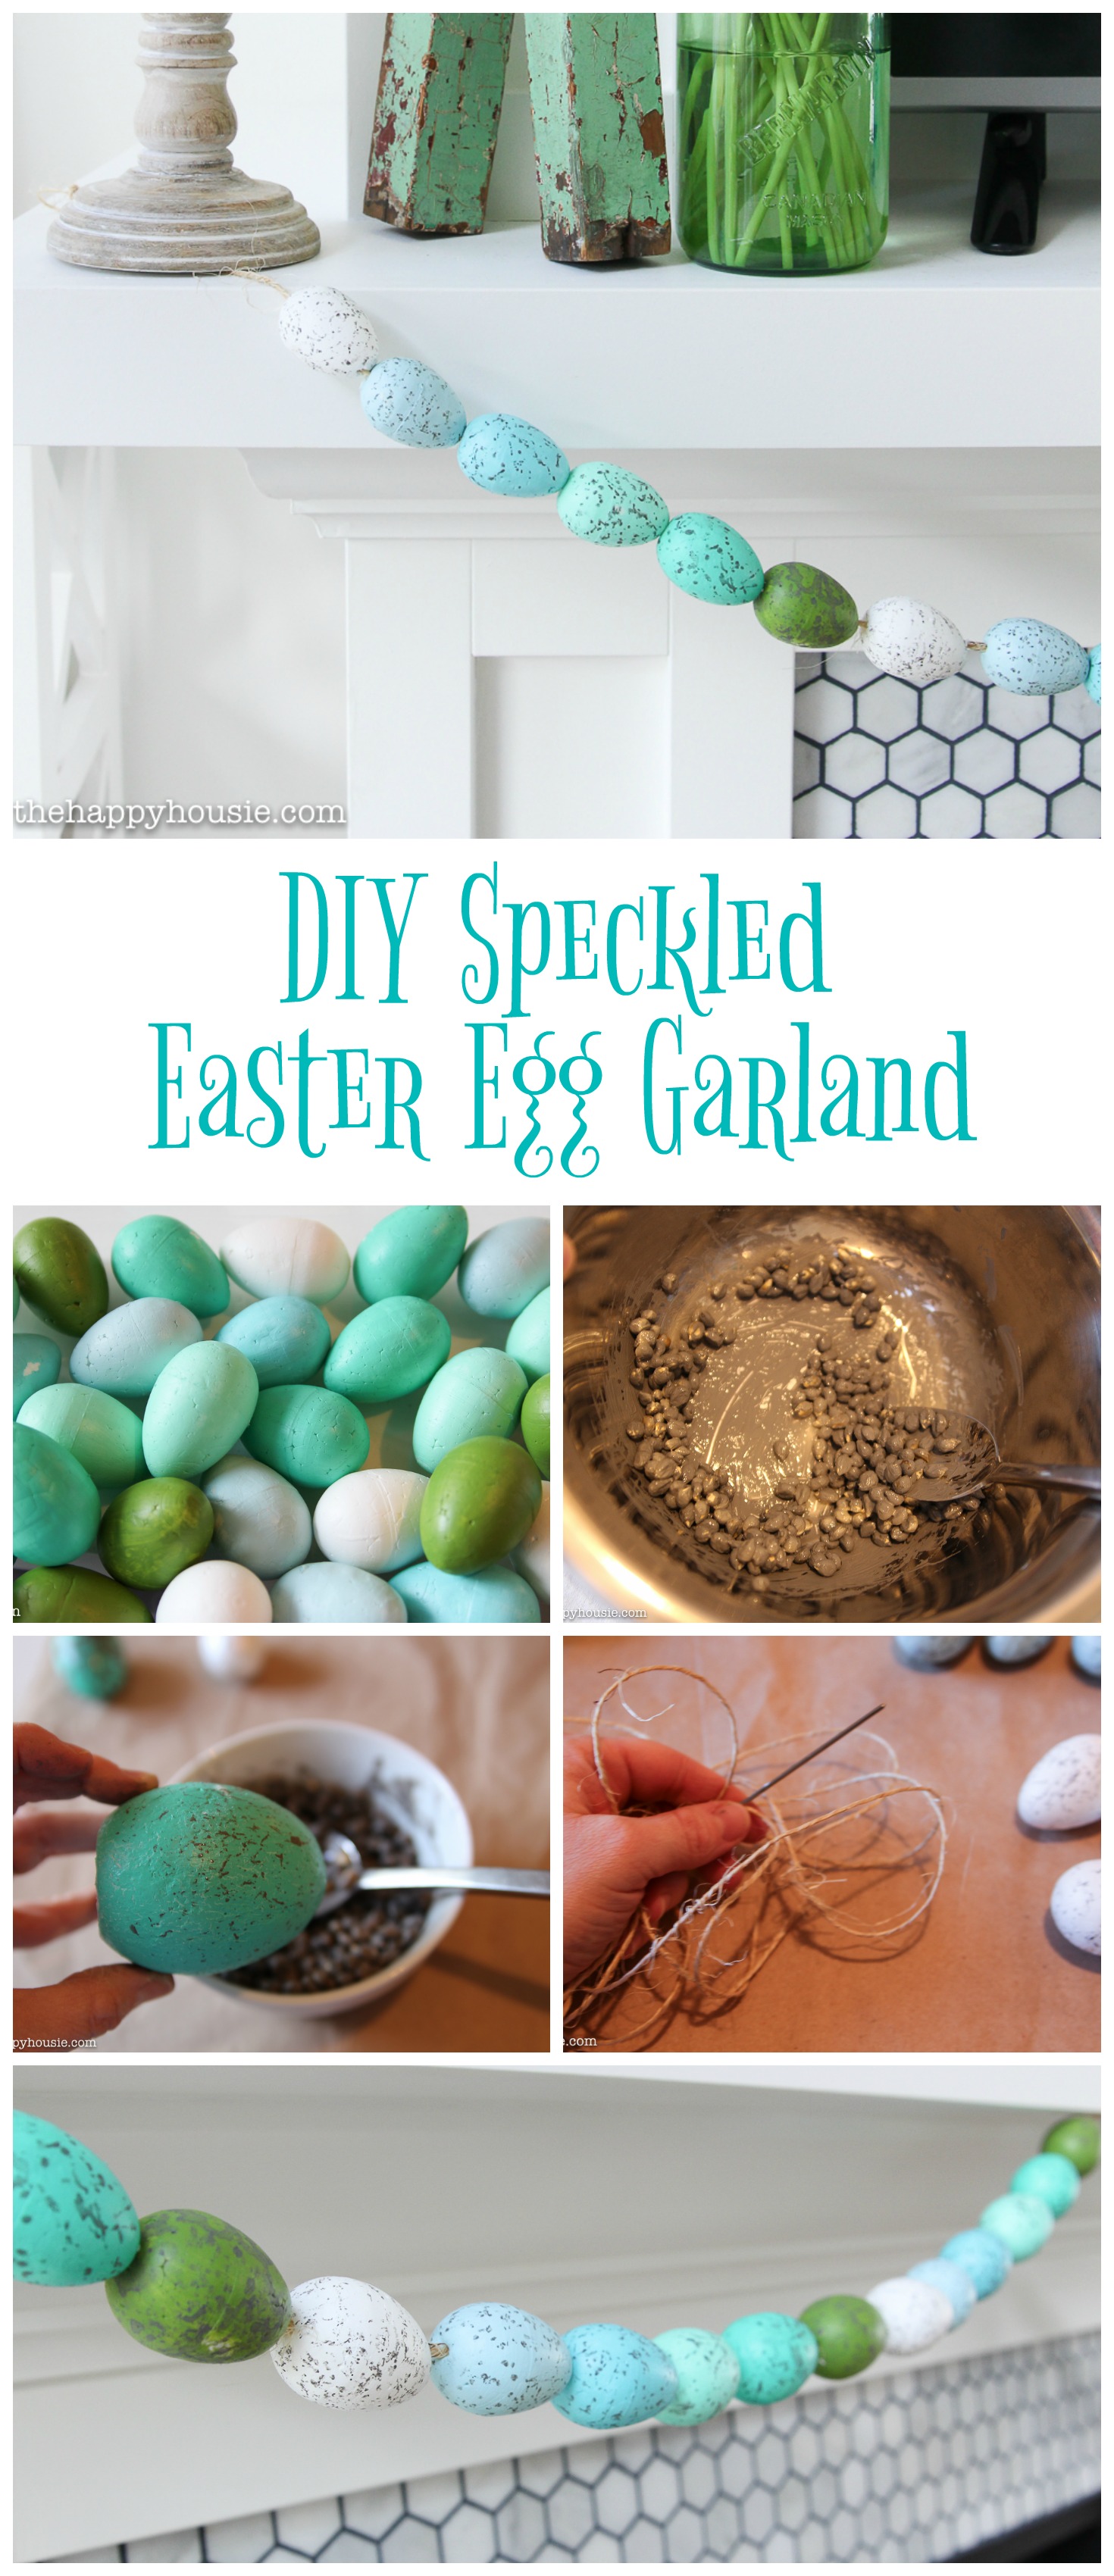 DIY Speckled Easter Egg Garland poster.